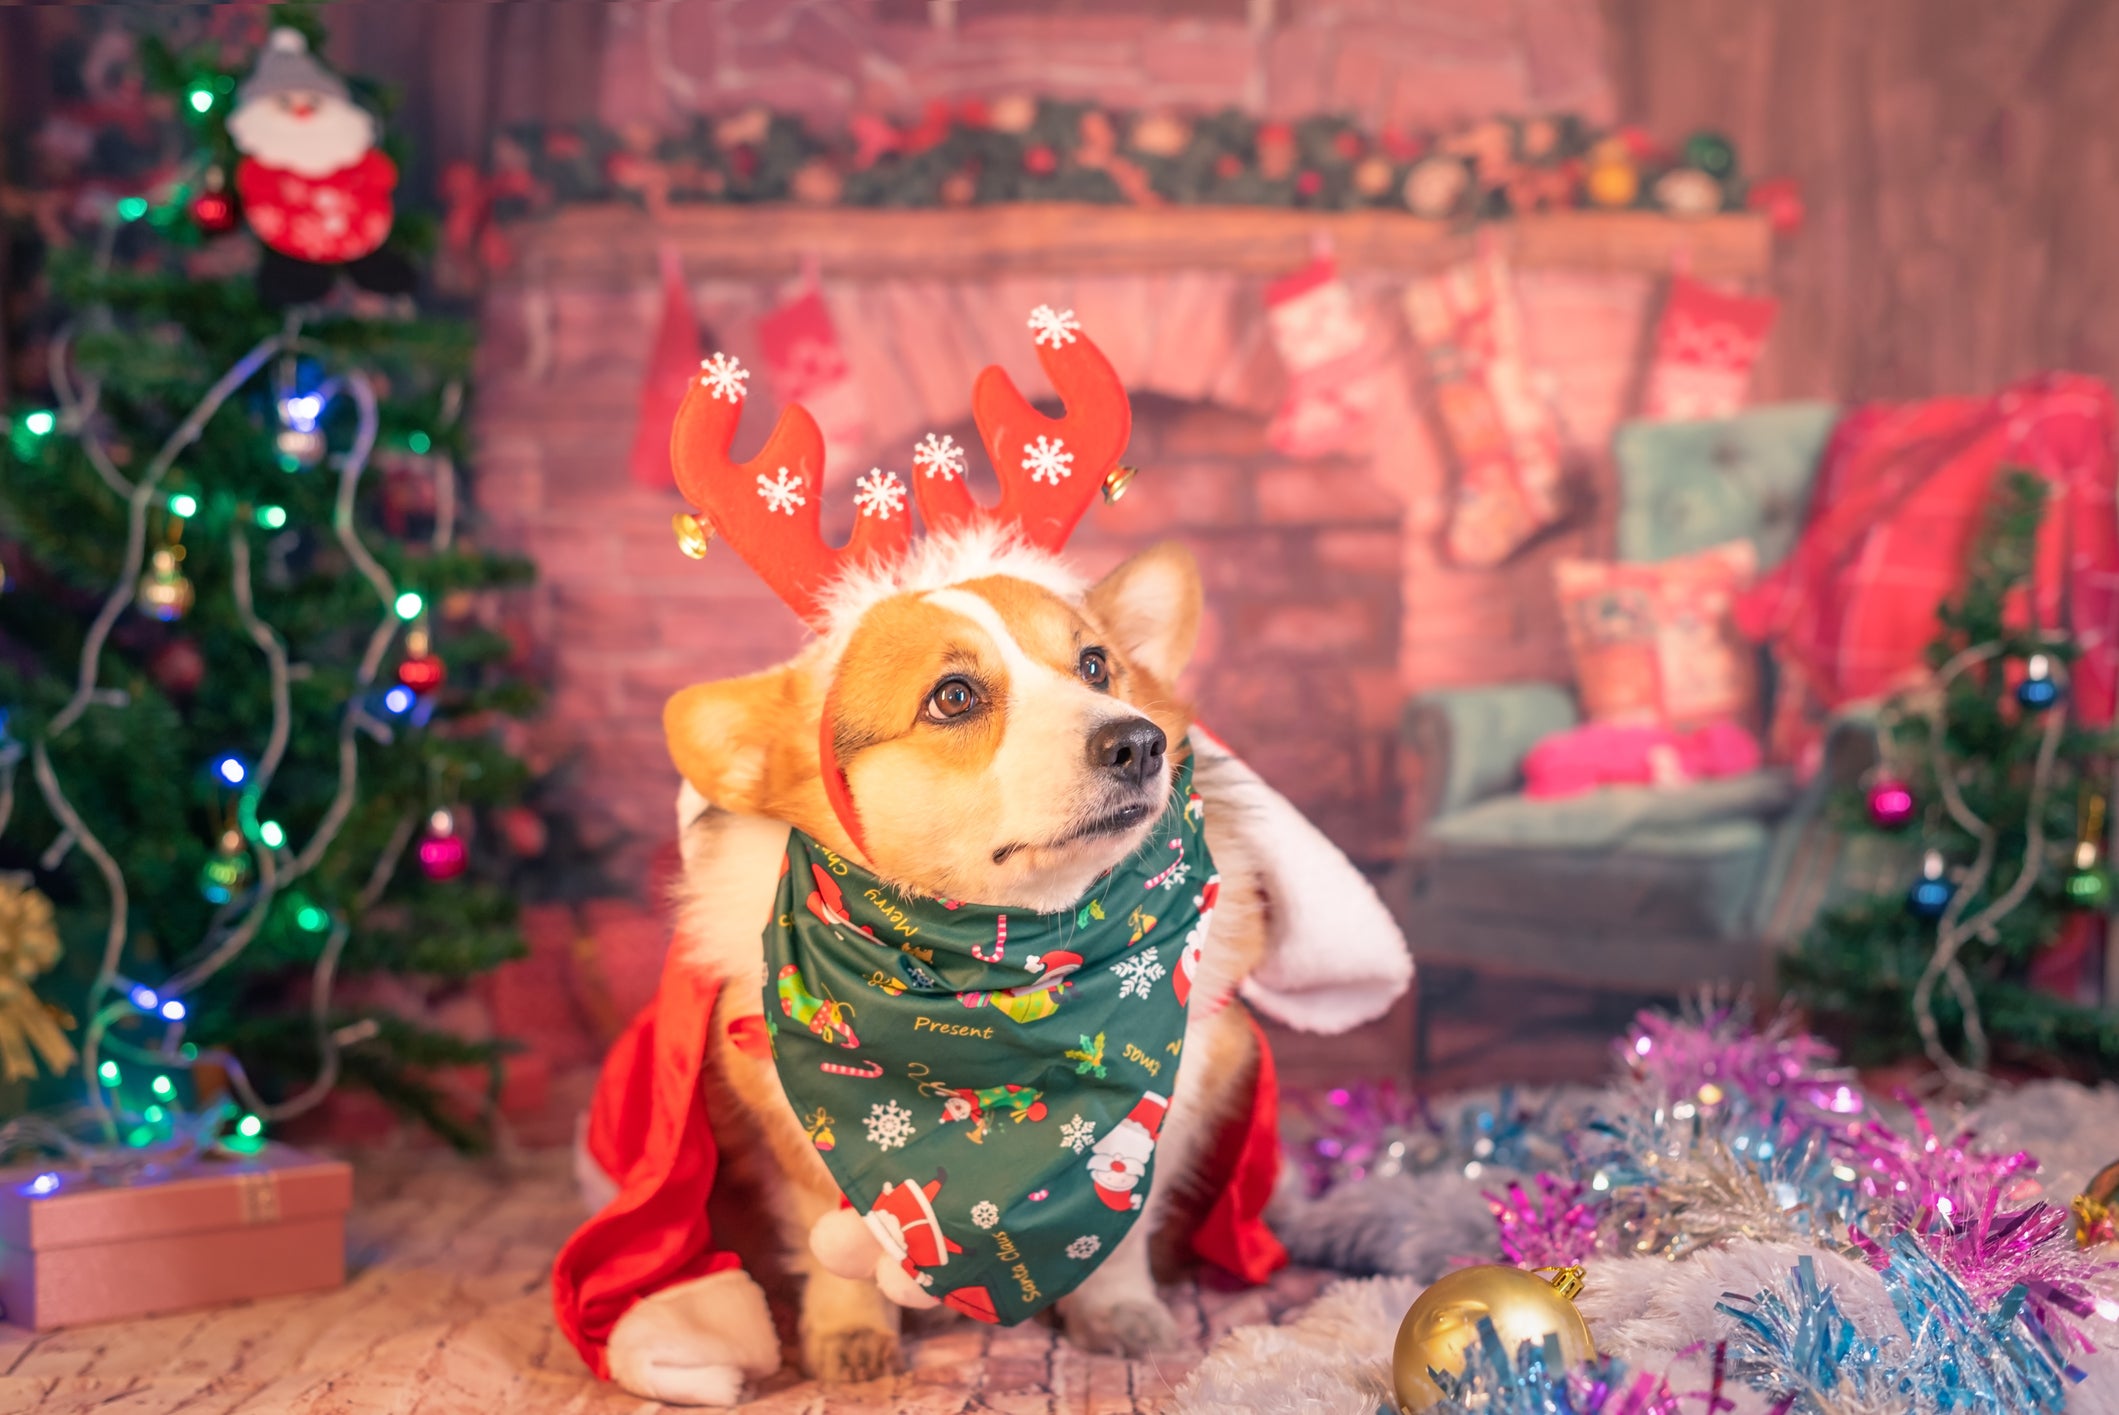 Cãozinho usando roupas coloridas de Natal em fundo completamente decorado para a festa